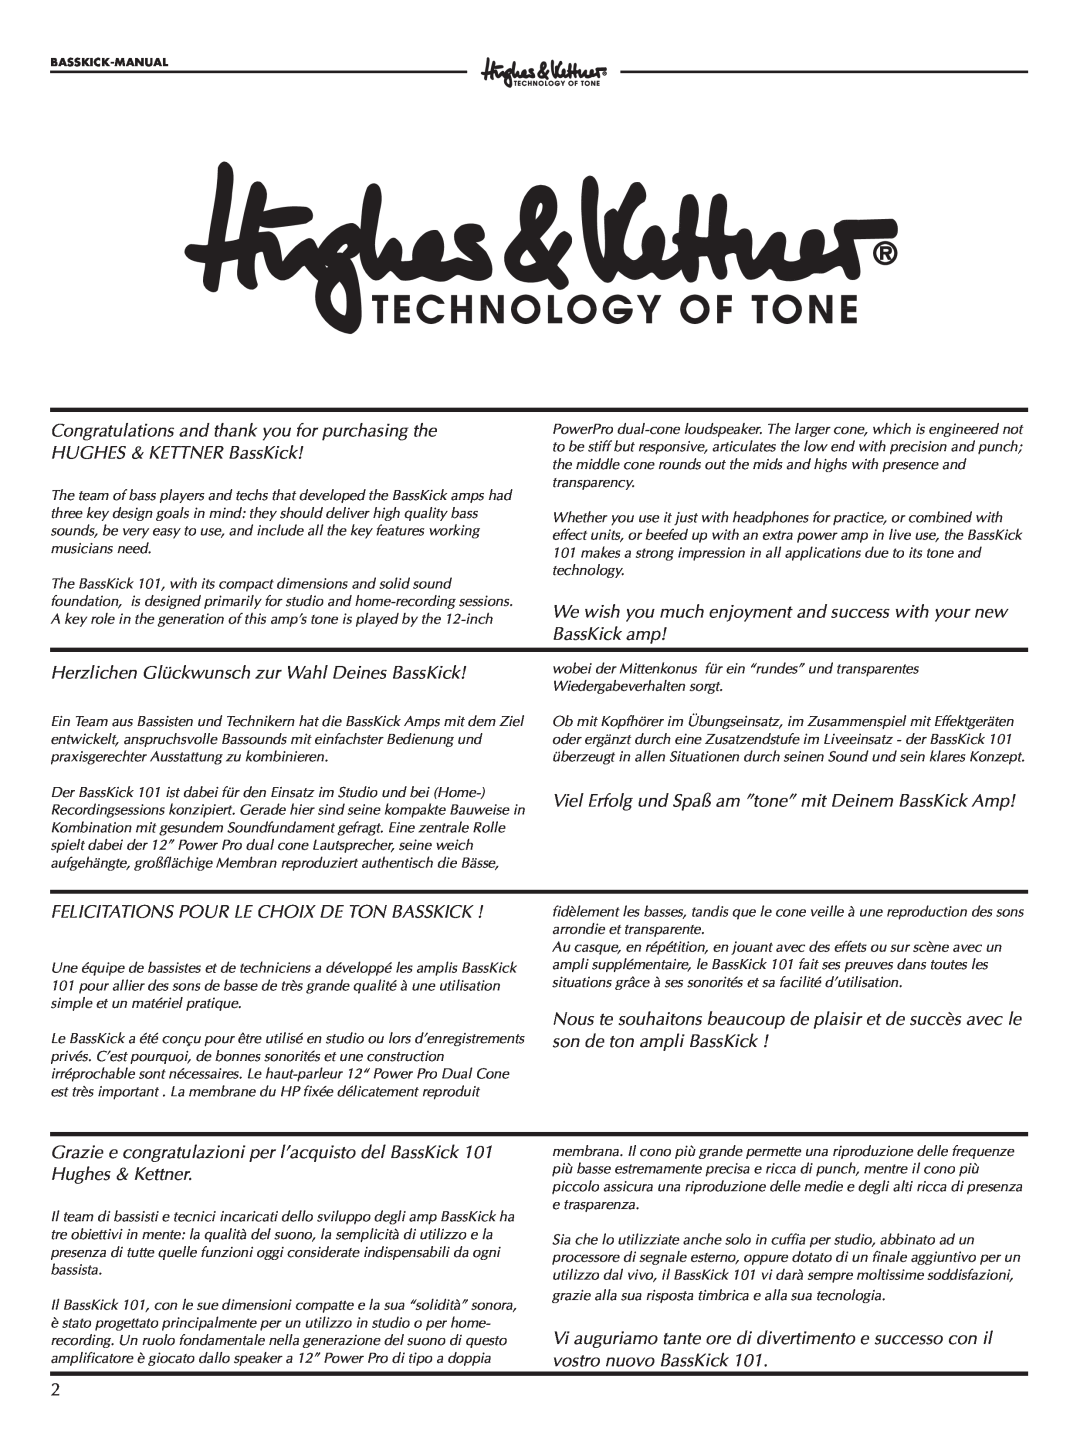 Hughes & Kettner Bass Kick 101 manual Herzlichen Glückwunsch zur Wahl Deines BassKick 